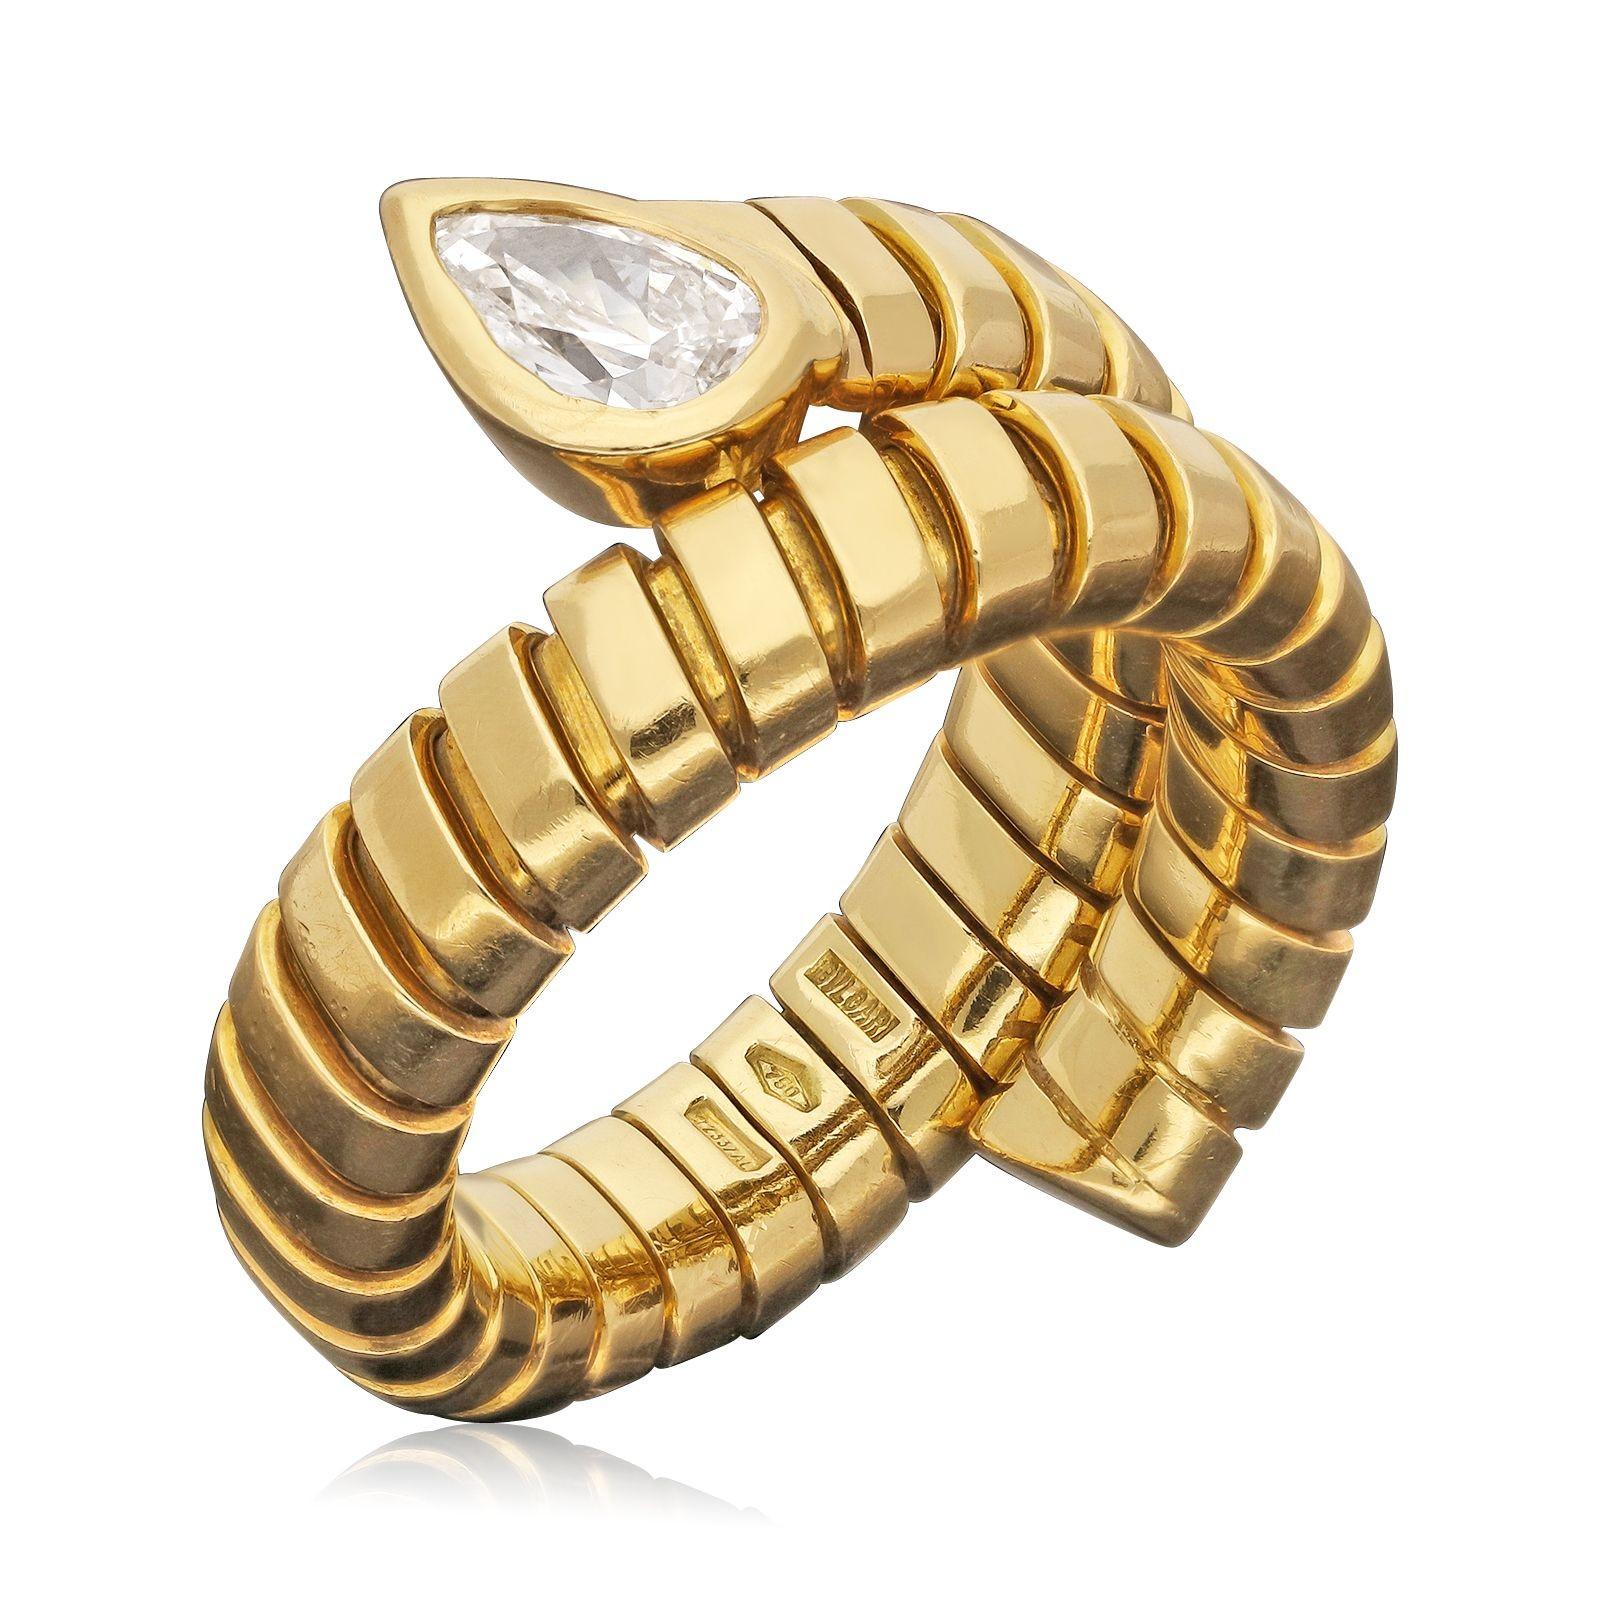 Ein flexibler Serpenti Tubogas Gold- und Diamantring von Bulgari aus den 2000er Jahren. Der Ringkörper aus 18-karätigem Gold mit dem charakteristischen, dehnbaren Tubogas-Design passt sich bequem an verschiedene Fingergrößen an, indem er sich